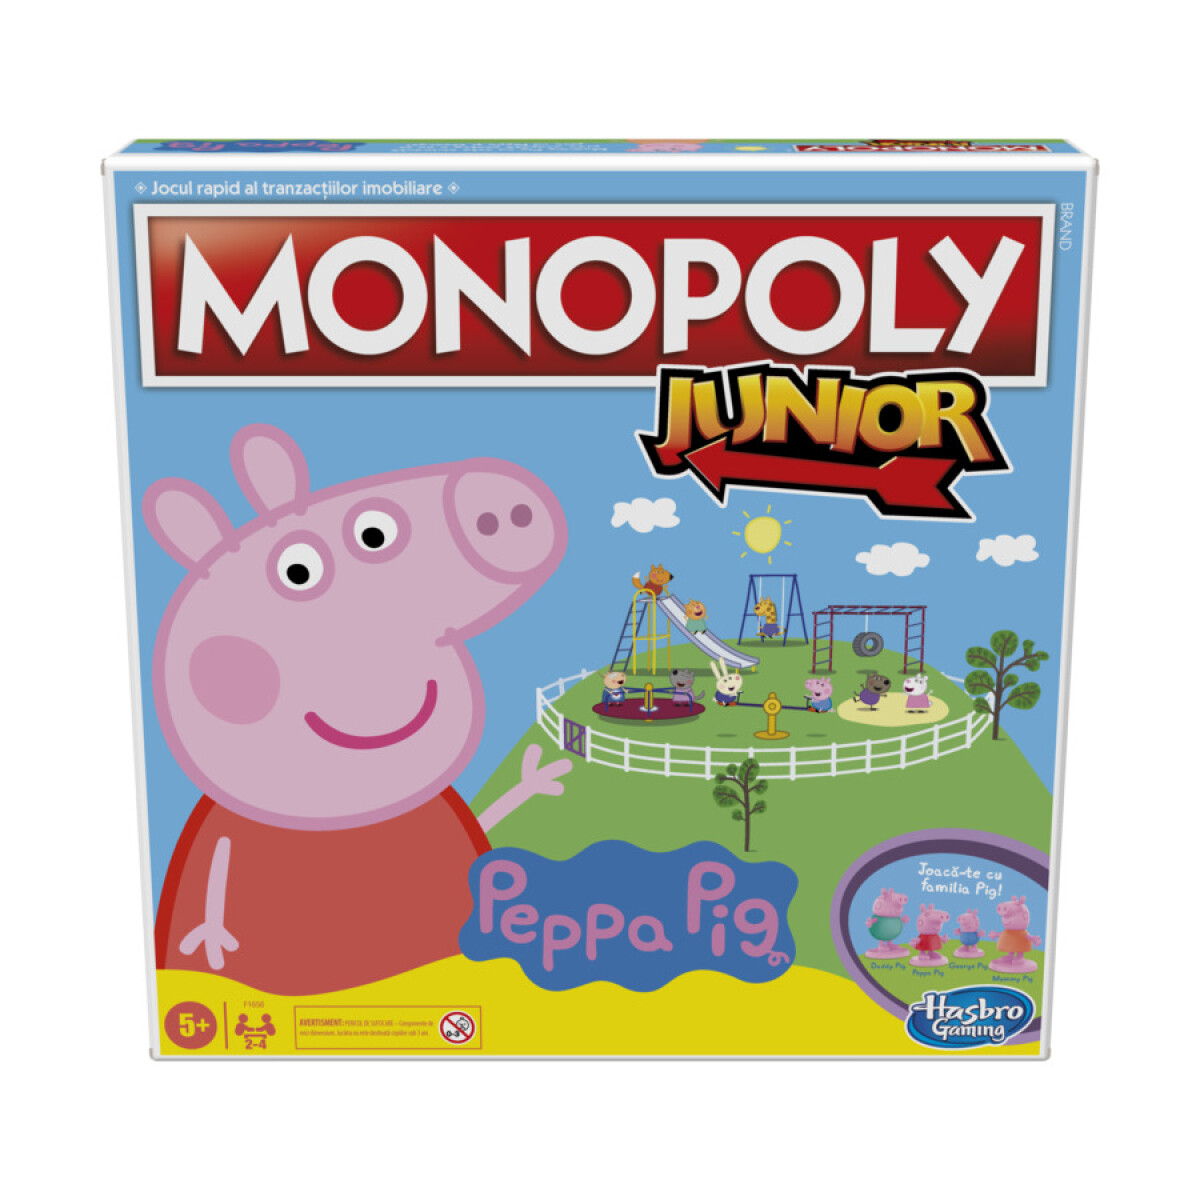 Juego de Mesa Monopoly Junior Peppa Pig - 001 